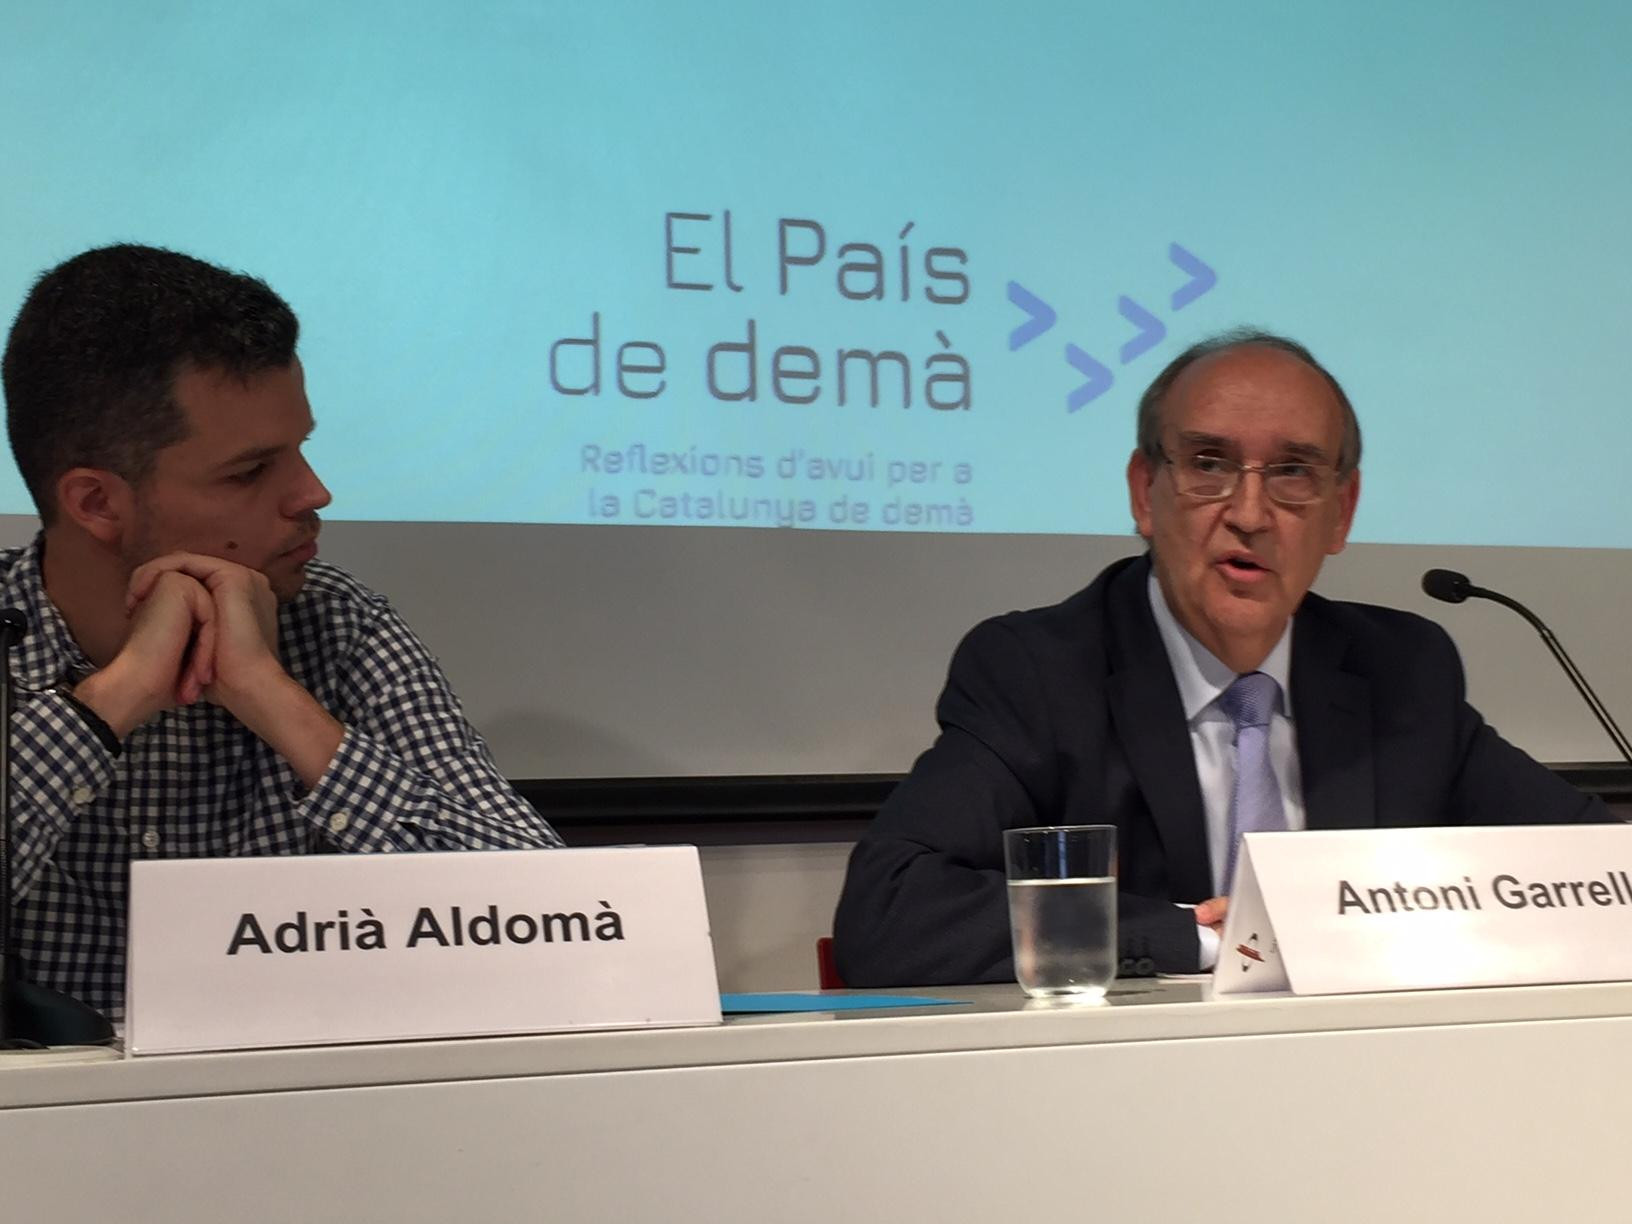 Adrià Aldomà y Antoni Garrell, coordinadores de 'El País de demà'